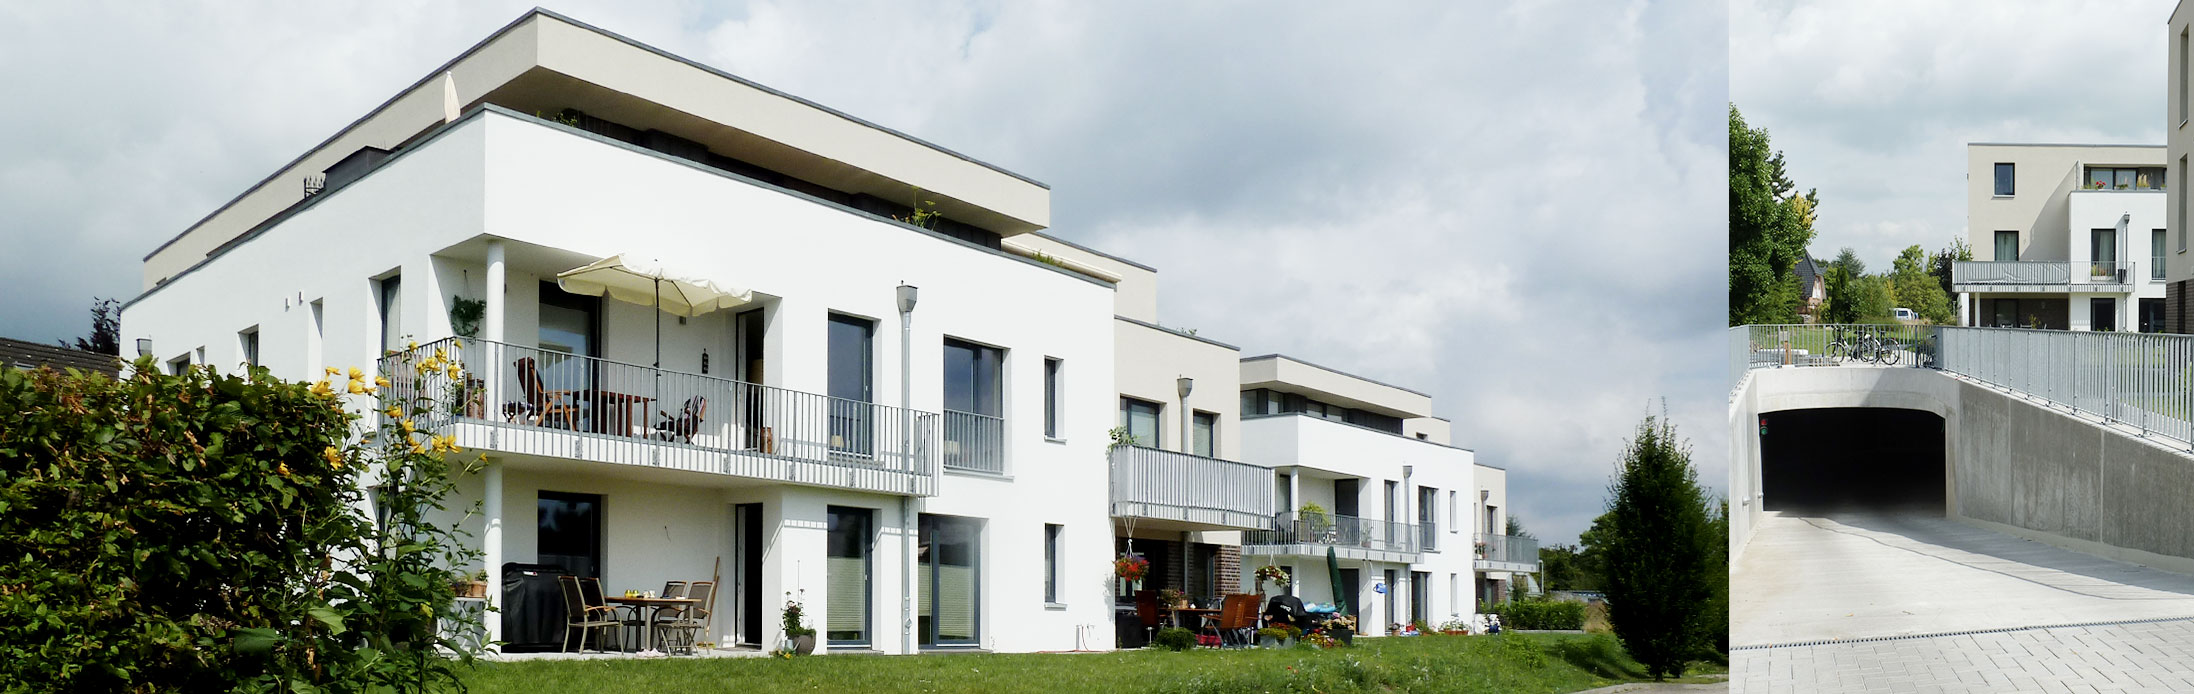 Wedel – Wiedestrasse | Mehrfamilienhaus | 16 Wohneinheiten | Aufzug | Tiefgarage | Baujahr 2013